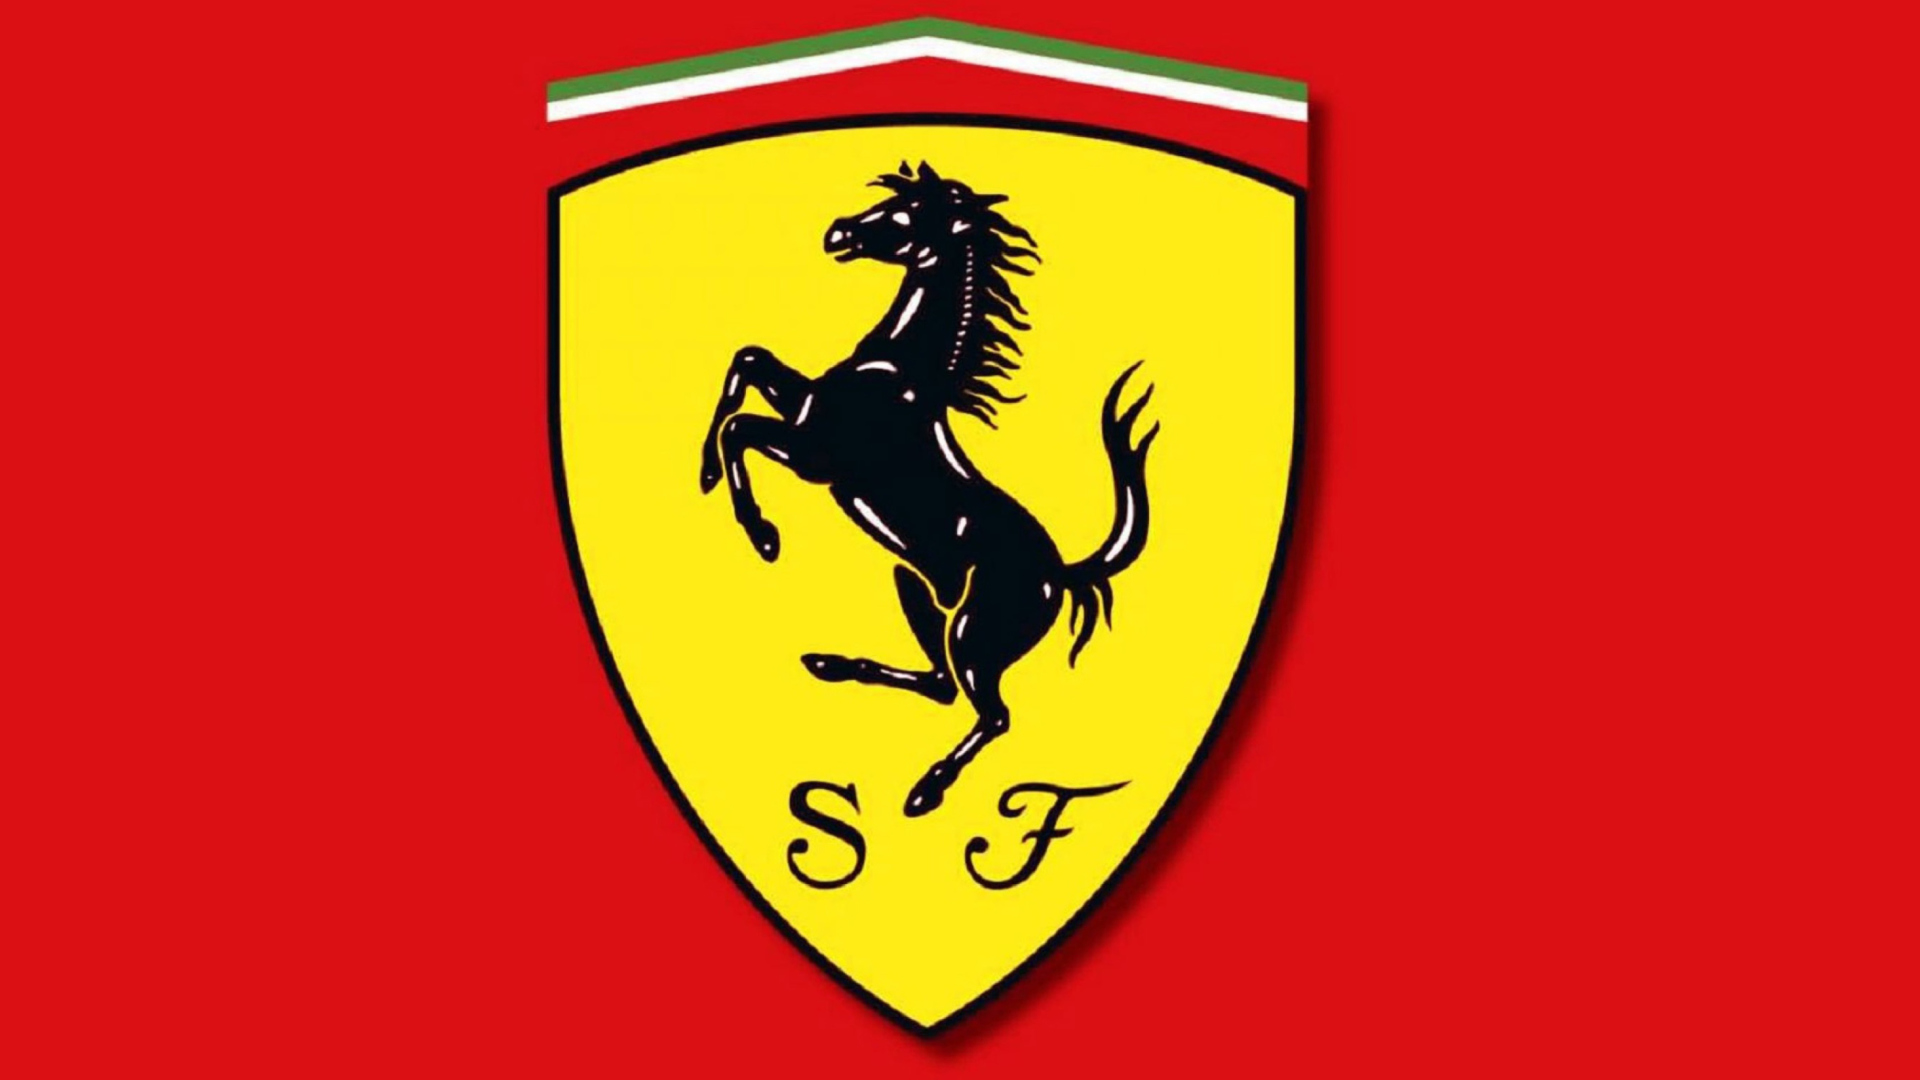 Ferrari Emblem screenshot #1 1920x1080